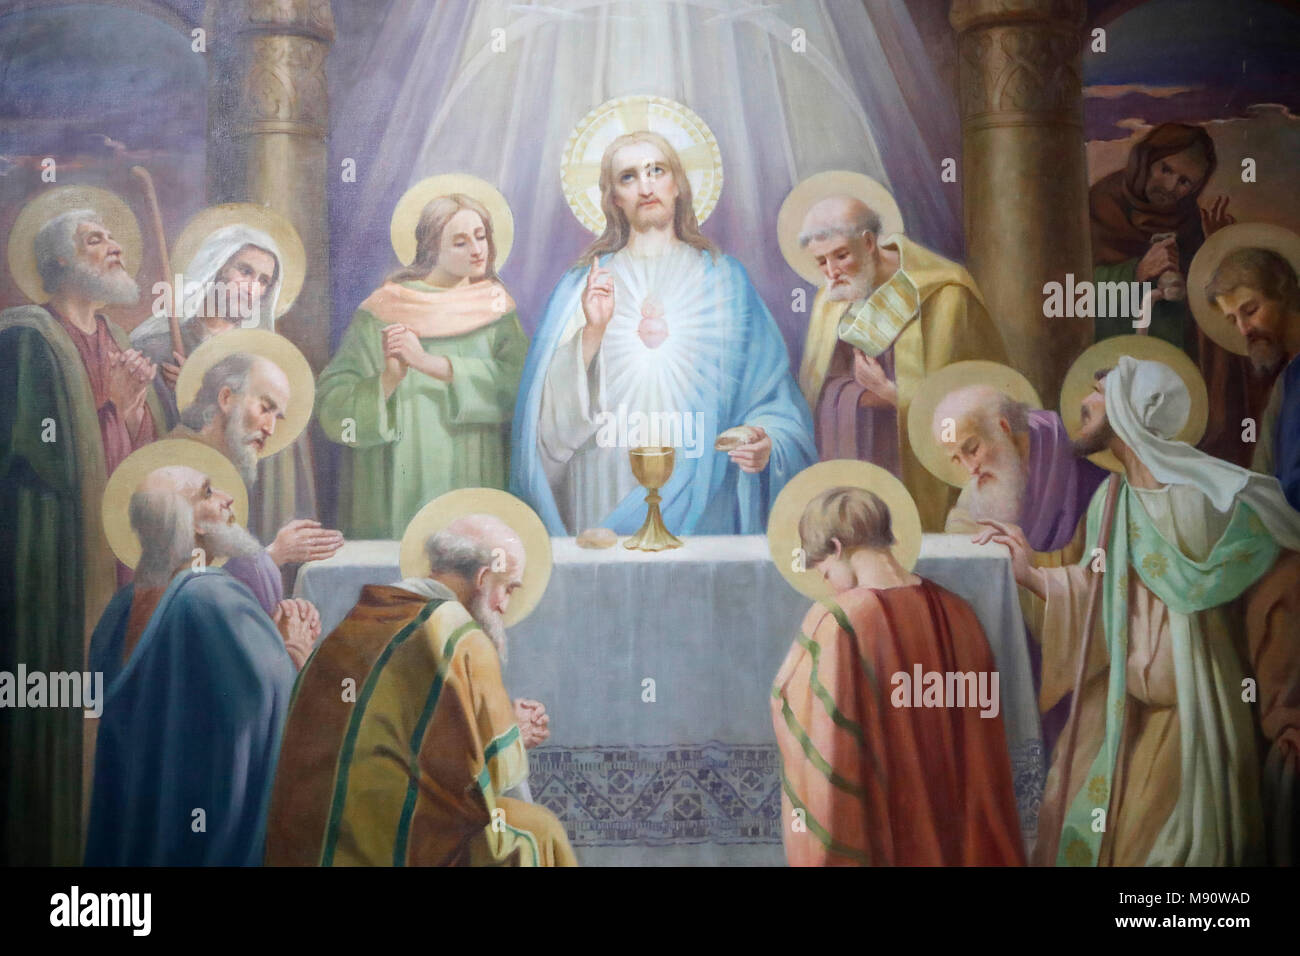 Chiesa Saint-Grat. L'Ultima Cena di Gesù con i suoi apostoli a Gerusalemme prima della sua crocifissione. Valgrisenche. L'Italia. Foto Stock